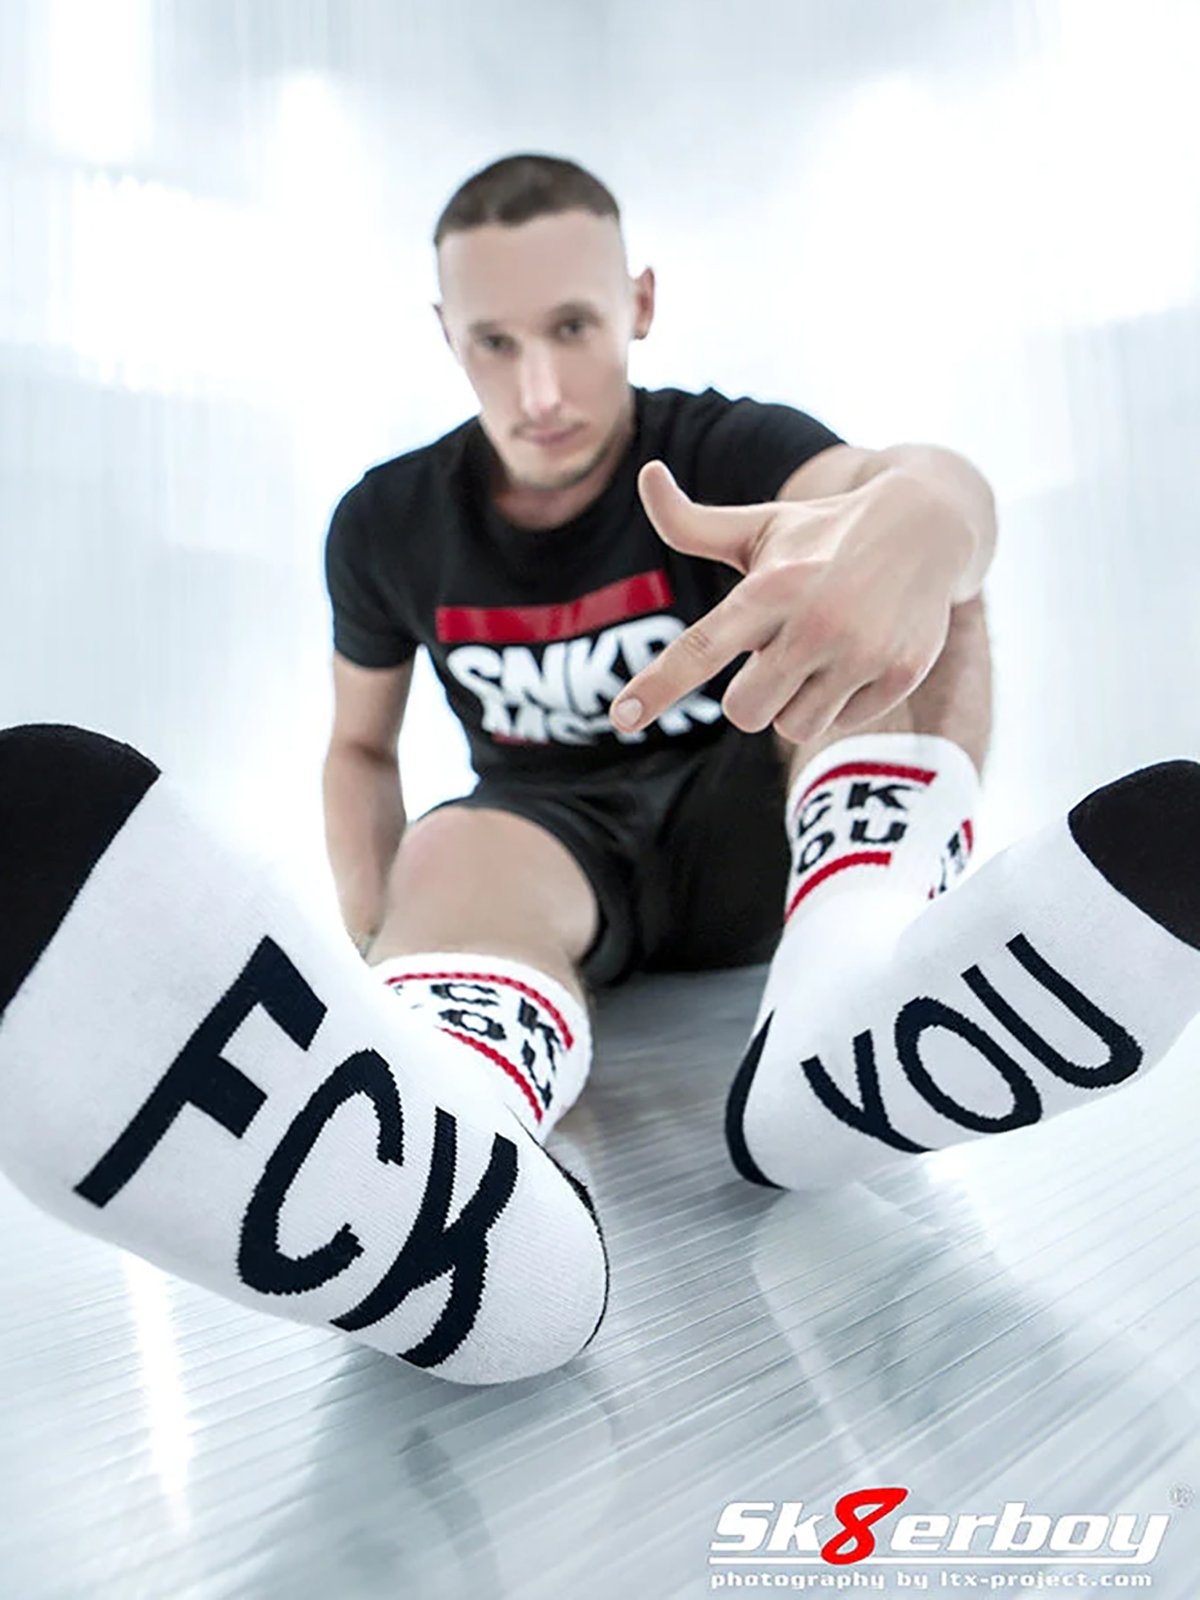 FCK YOU Socks | White